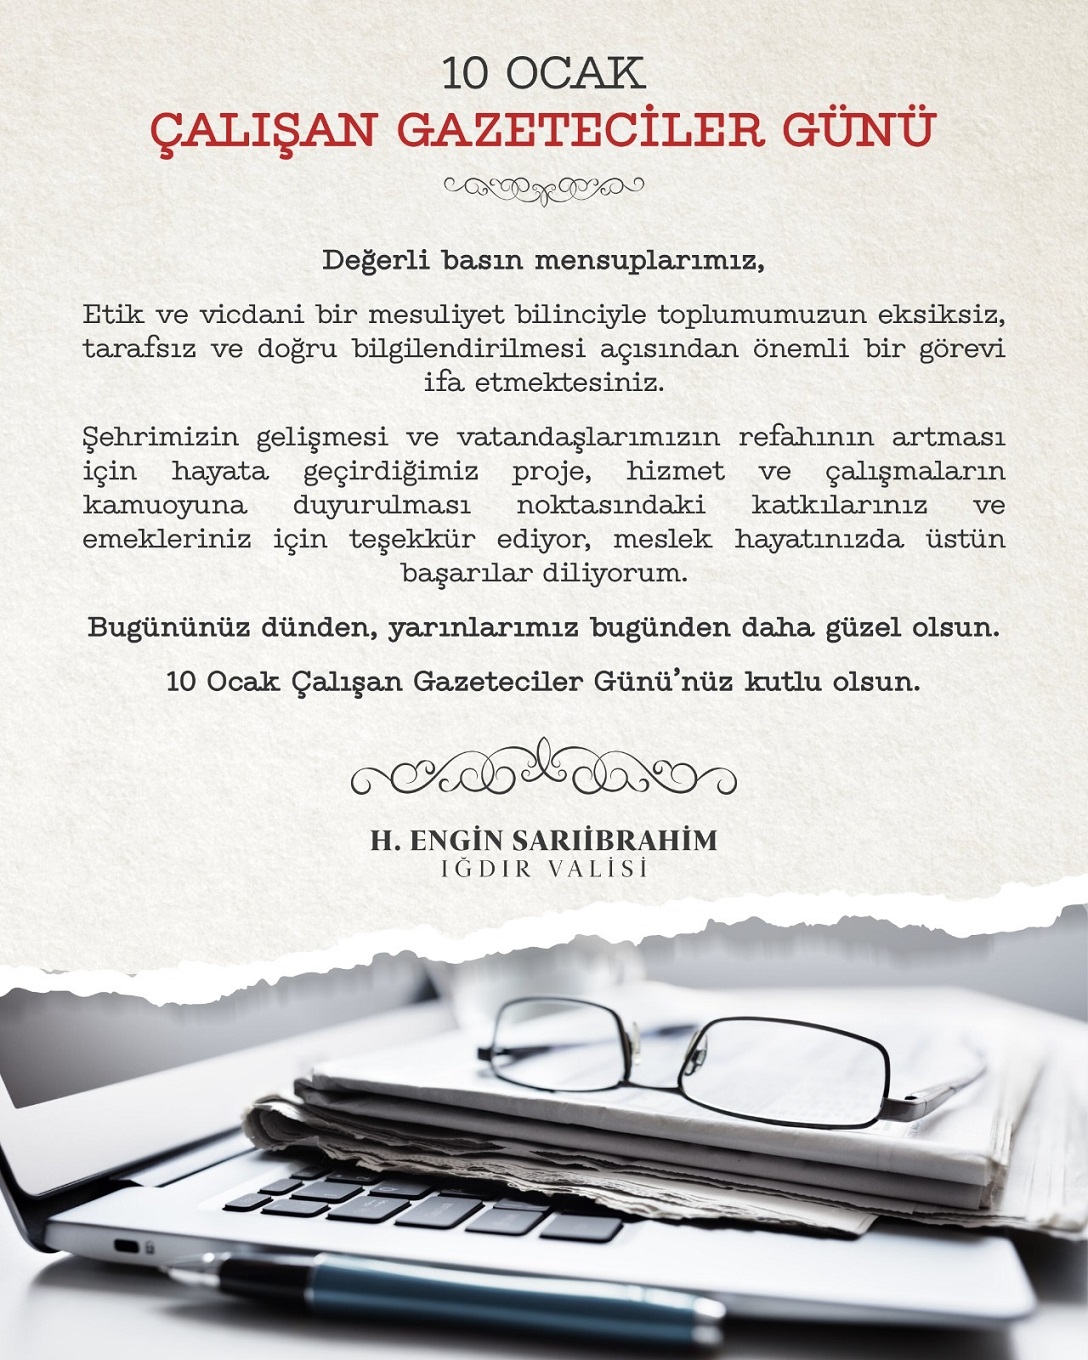 Vali H. Engin Sarıibrahim'in "Çalışan Gazeteciler Günü" Mesajı